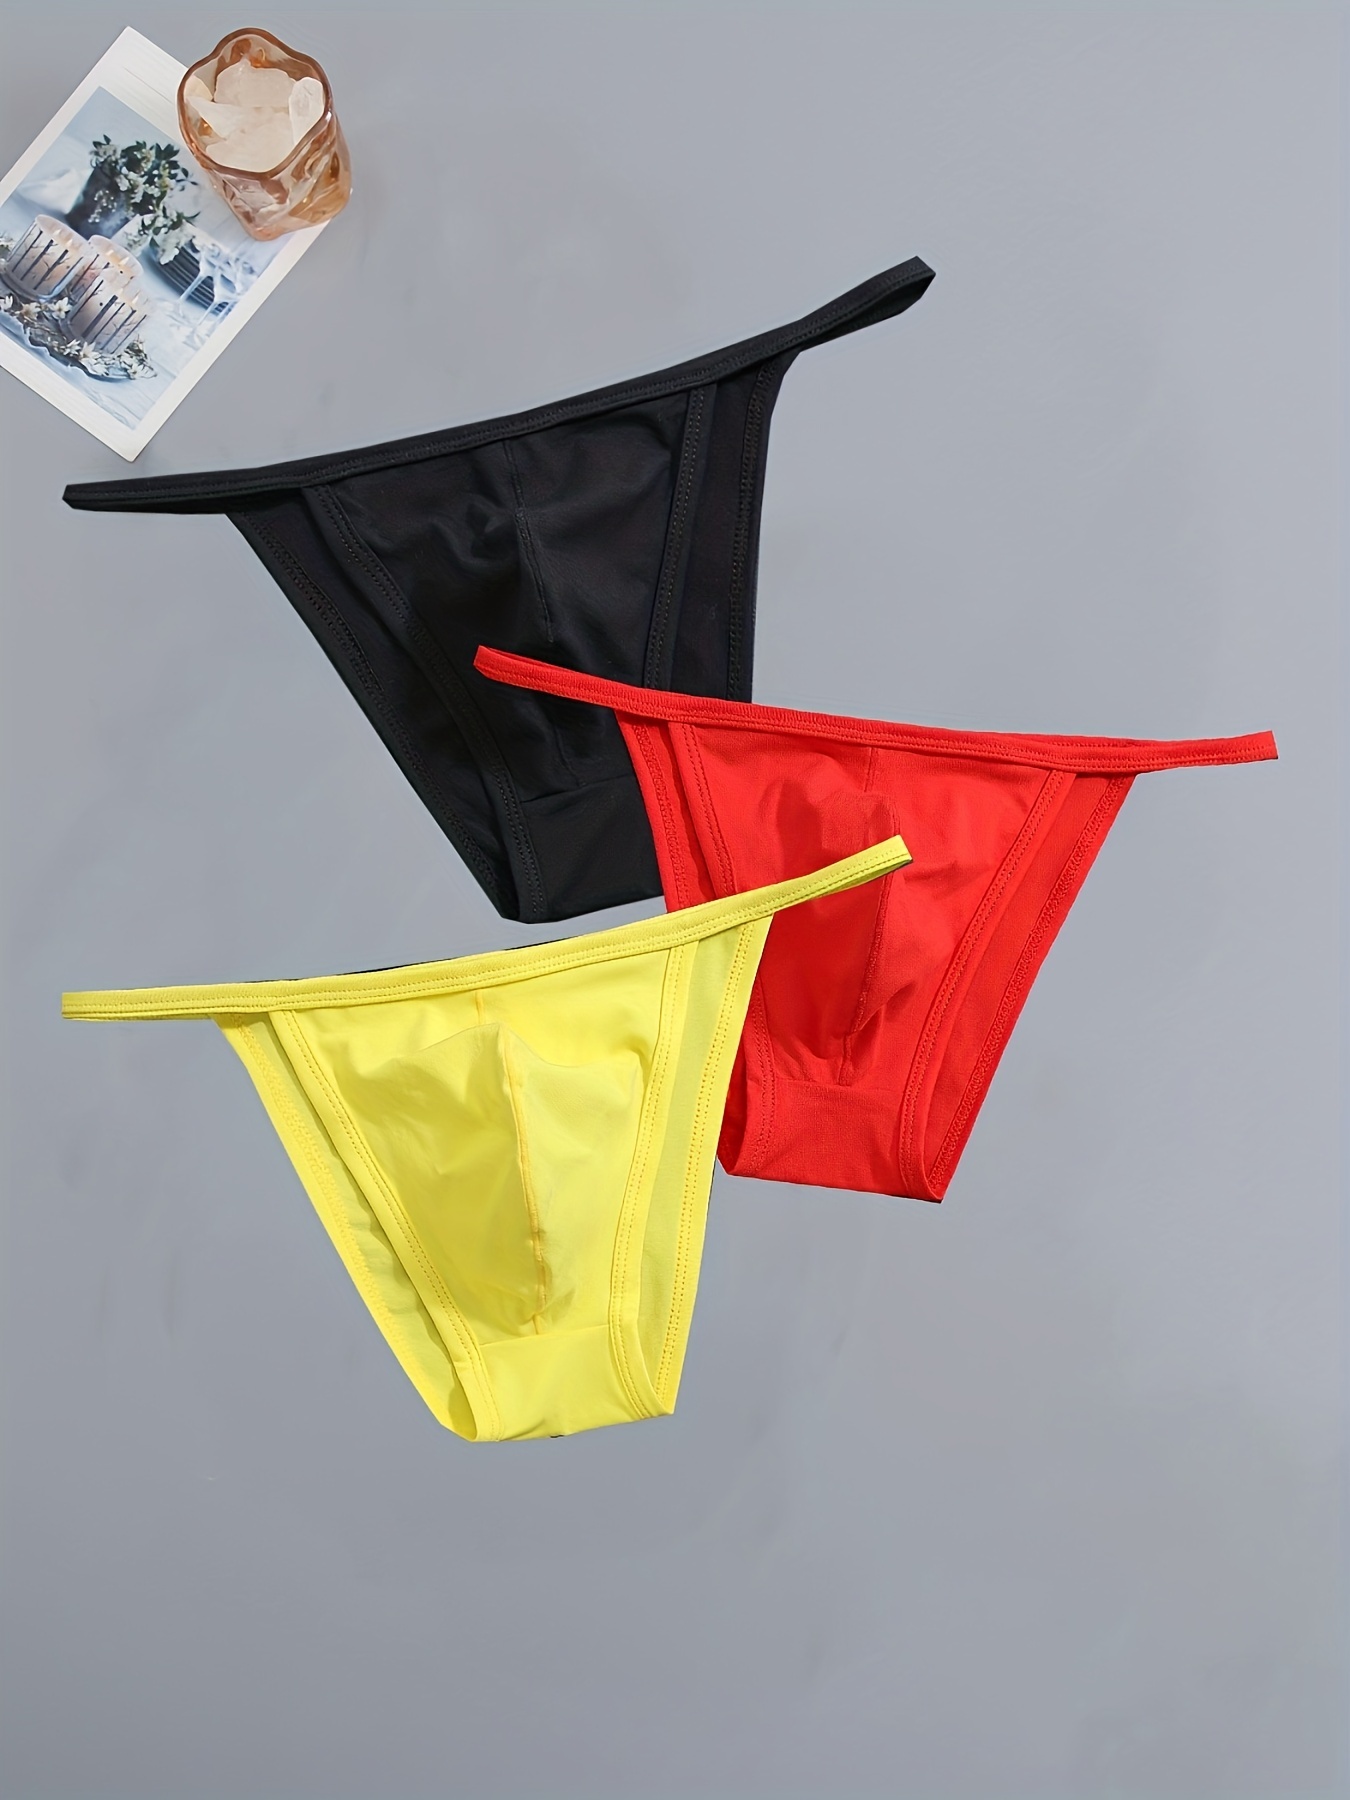 Brief Underpants Men's Solid Comfortable Drawstring Underwear Breathable  Casual Men's underwear Men Cotton (Green, L)